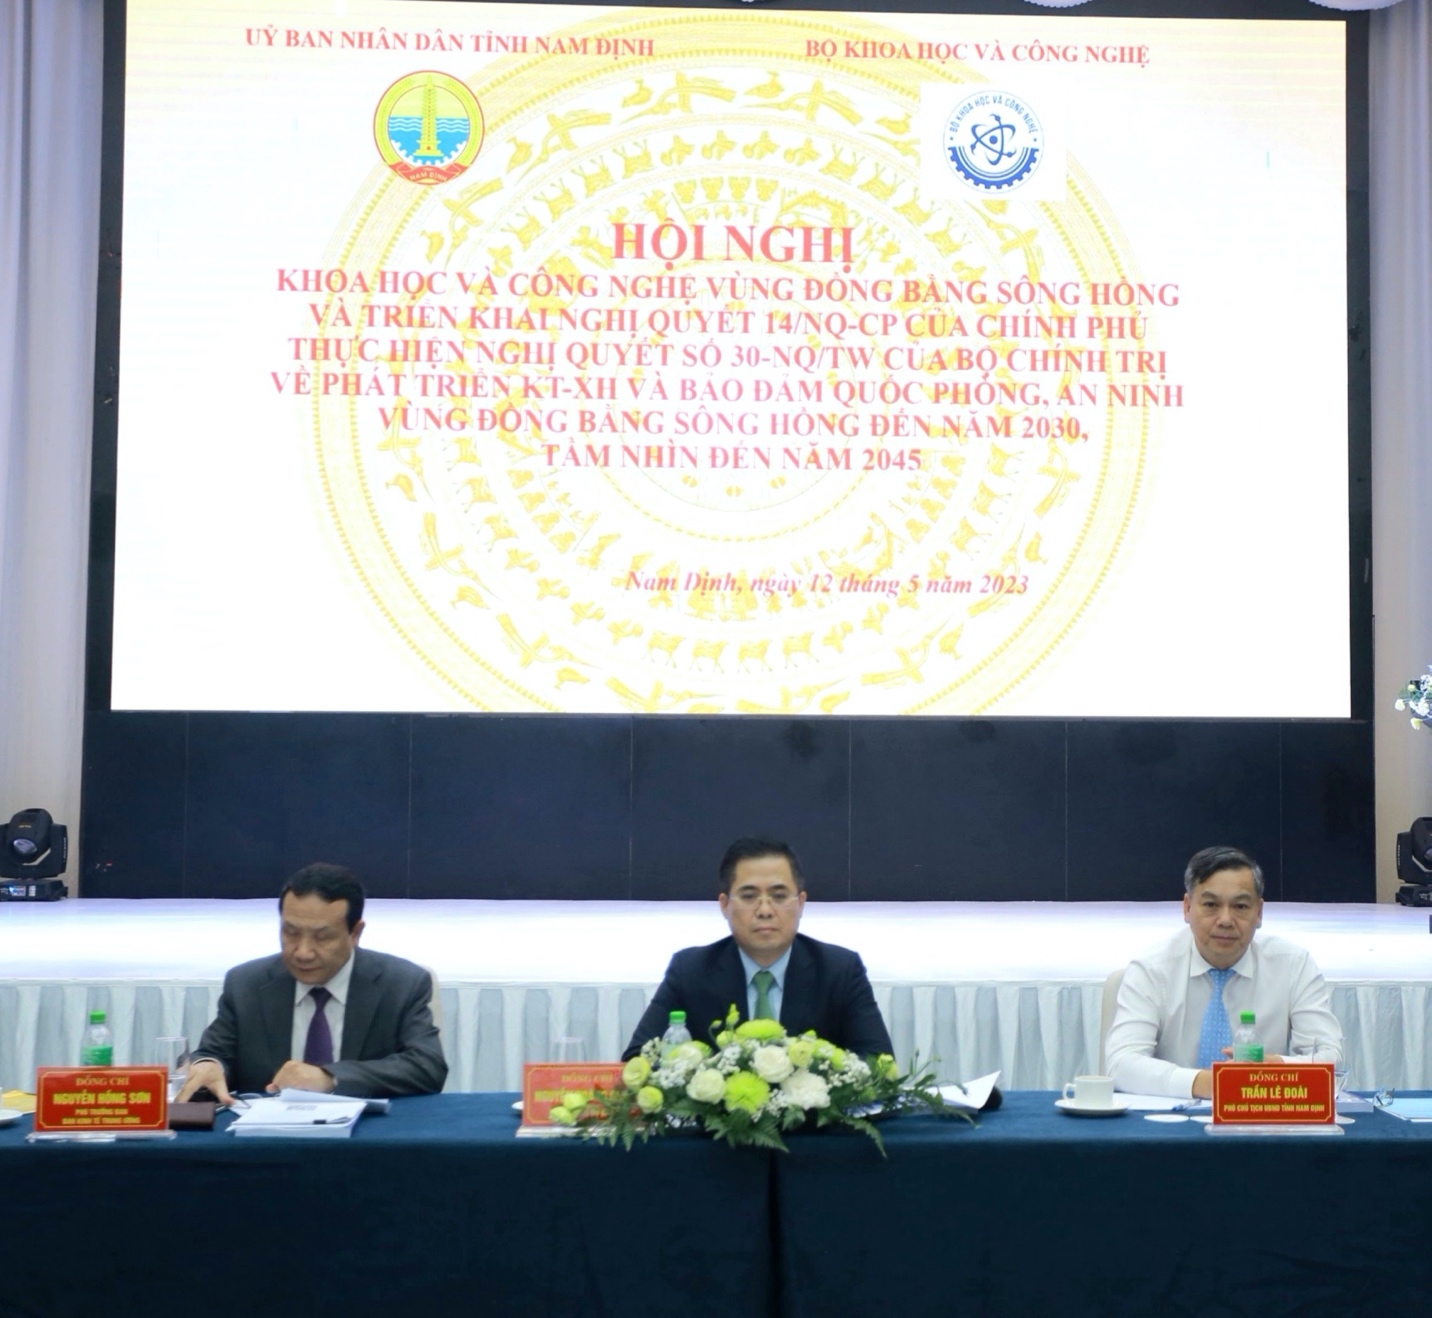 Hội nghị giao ban khoa học và công nghệ vùng Đồng bằng sông Hồng lần thứ XIII năm 2023